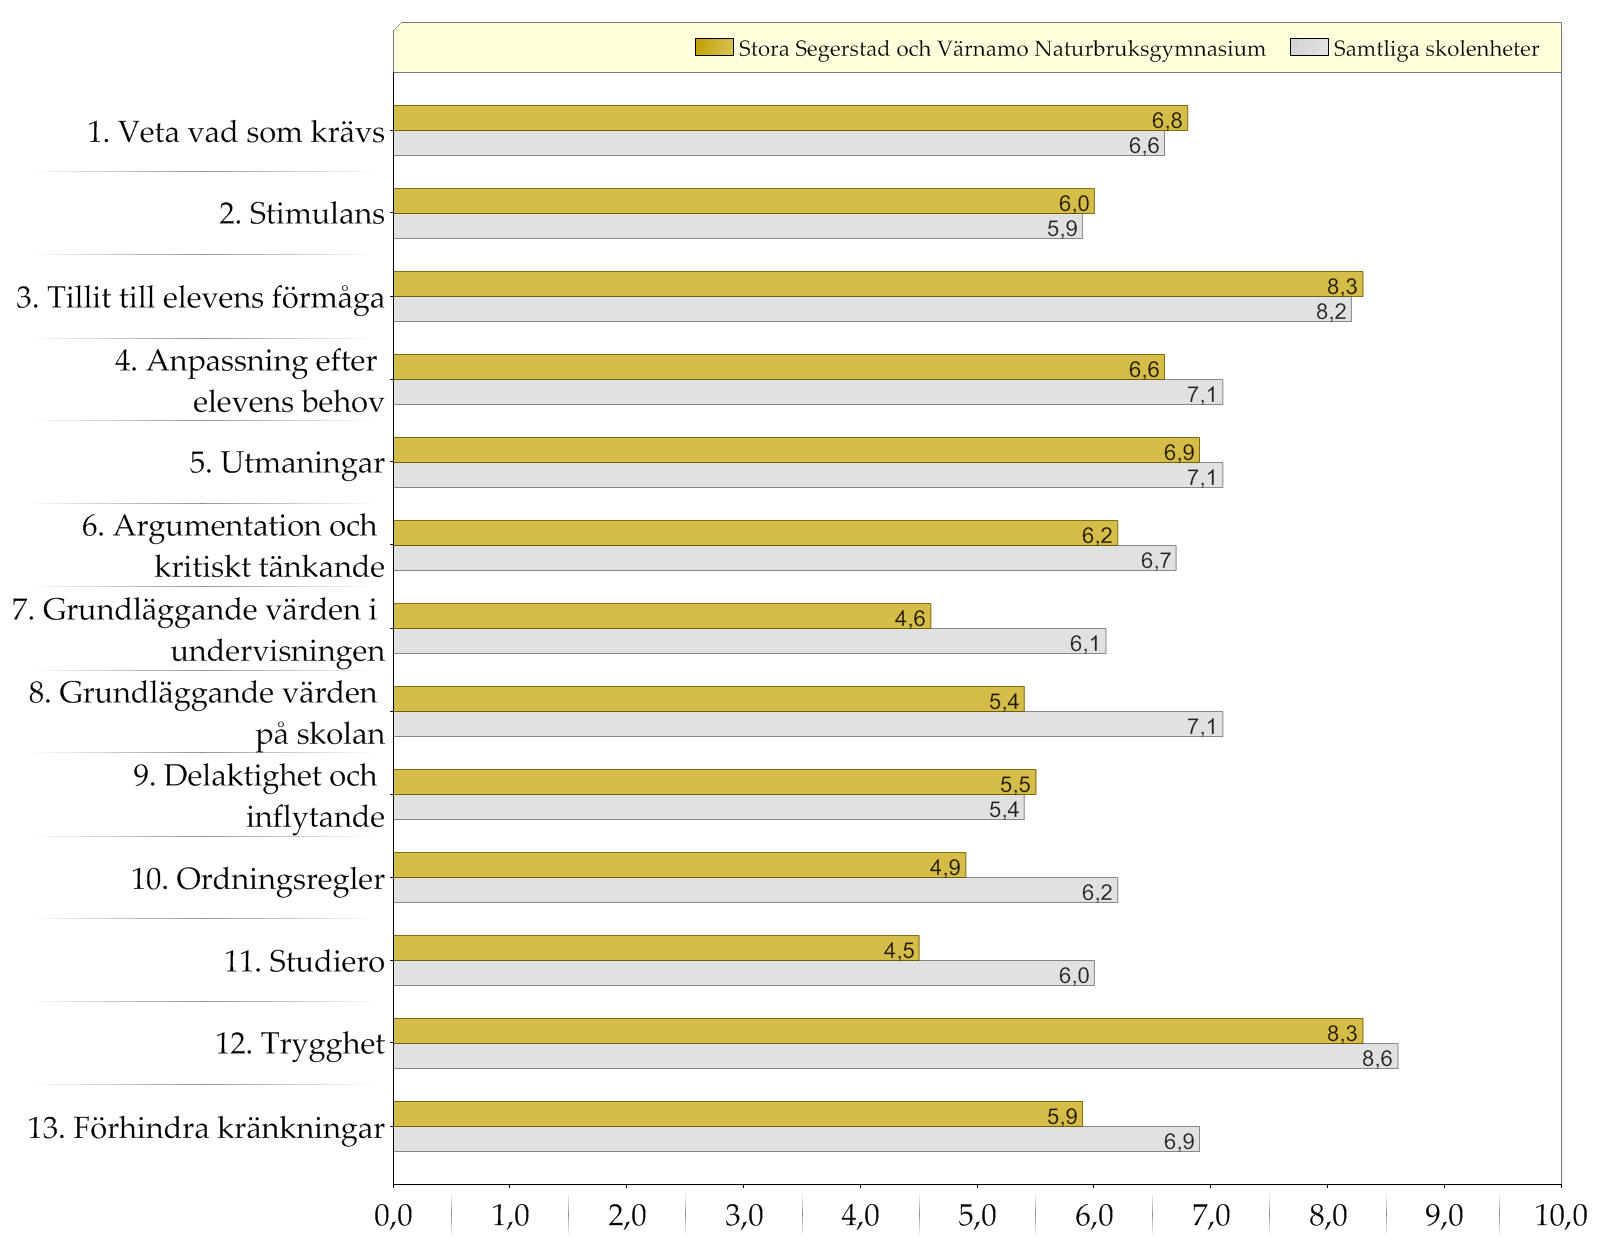 Samtliga skolenheter / Stora Segerstad och Värnamo Naturbruksgymnasium Resultat indexvärden Diagram över indexvärden (0-10) Den gula stapeln (övre raden) representerar indexvärdet för